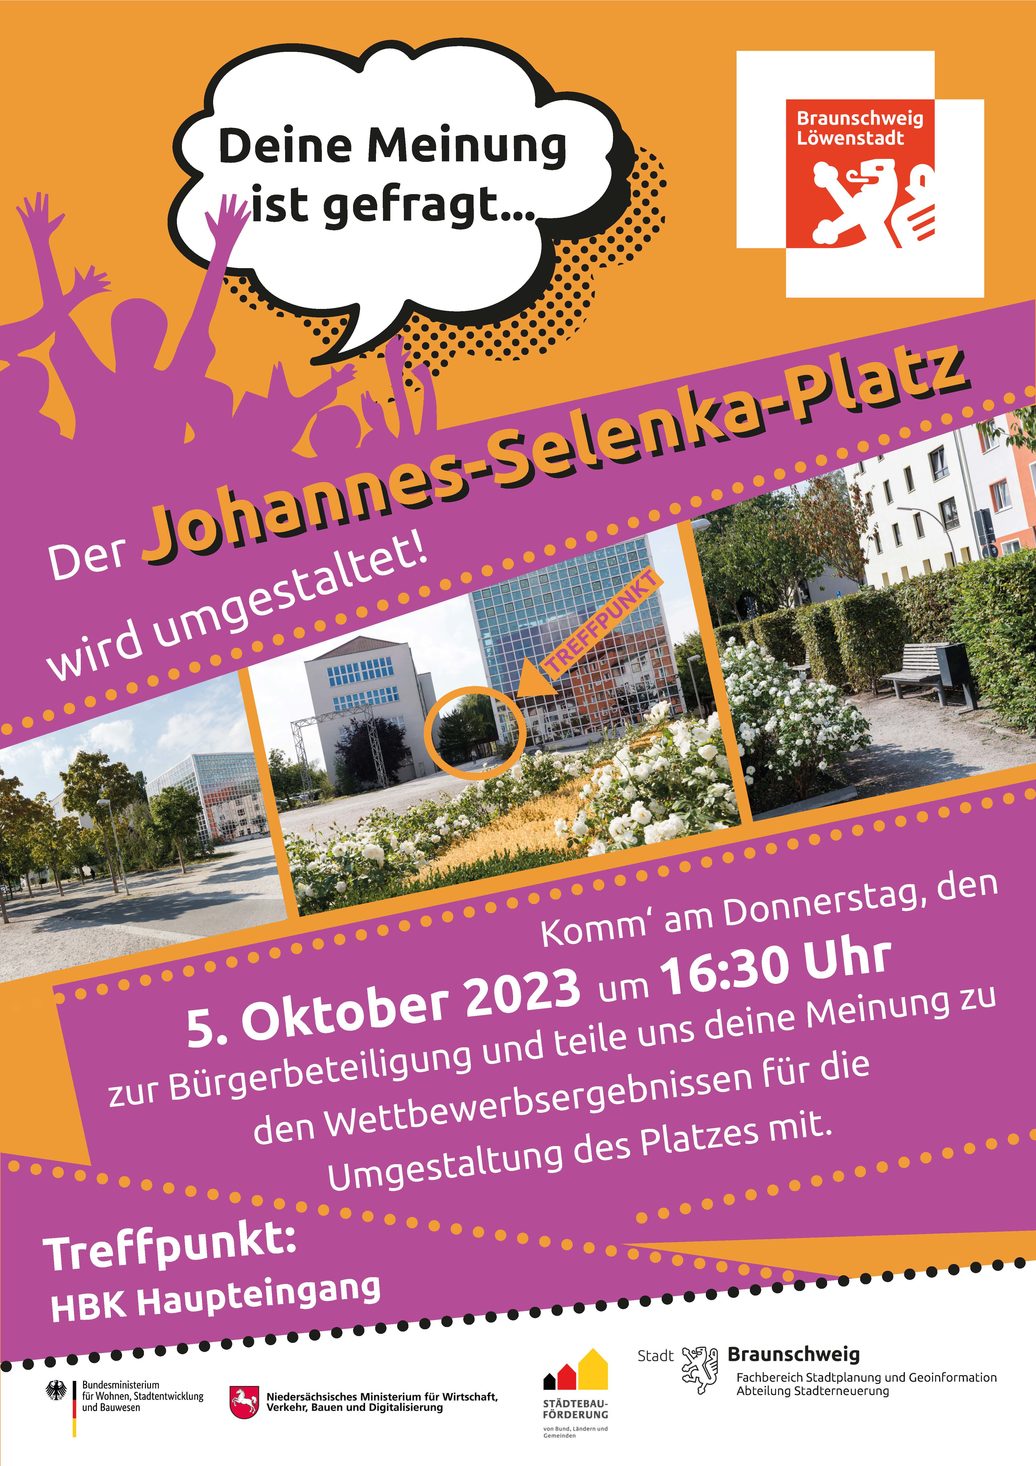 Beteiligung zur Umgestaltung des Johannes-Selenka-Platzes